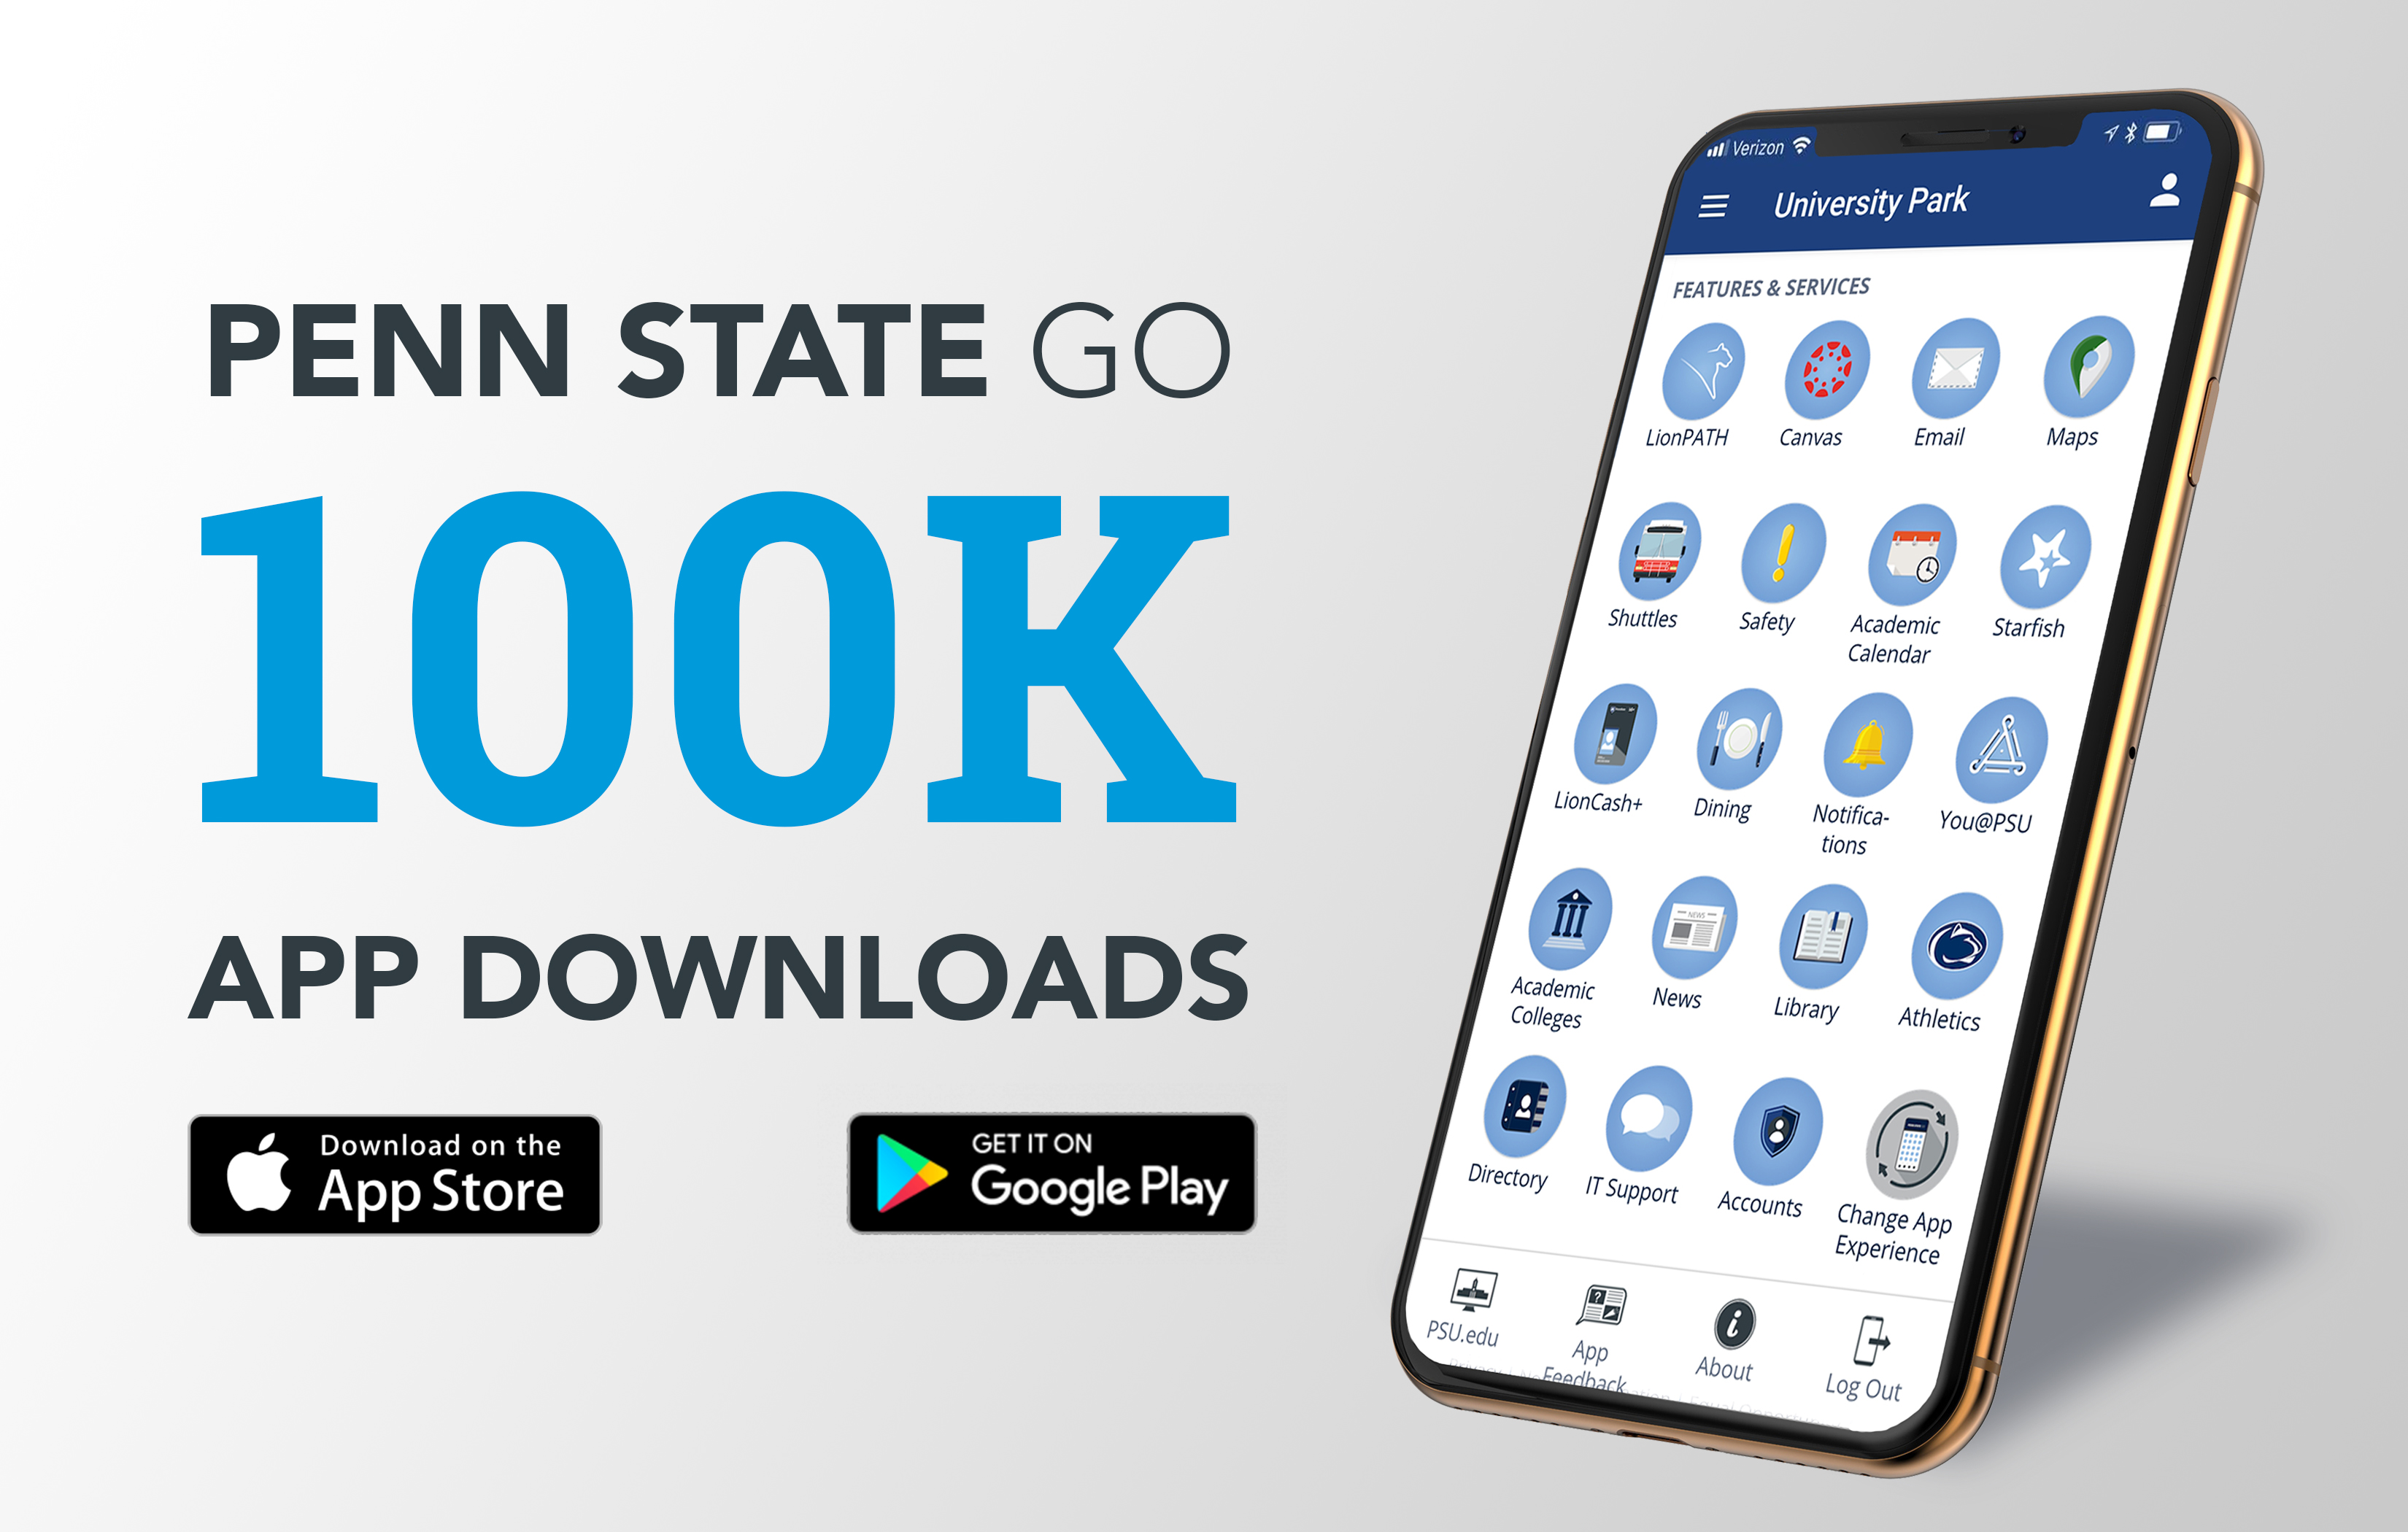 Penn State Fall 2022 Academic Calendar Penn State Go Mobile App Surpasses 100,000 Downloads | Penn State University